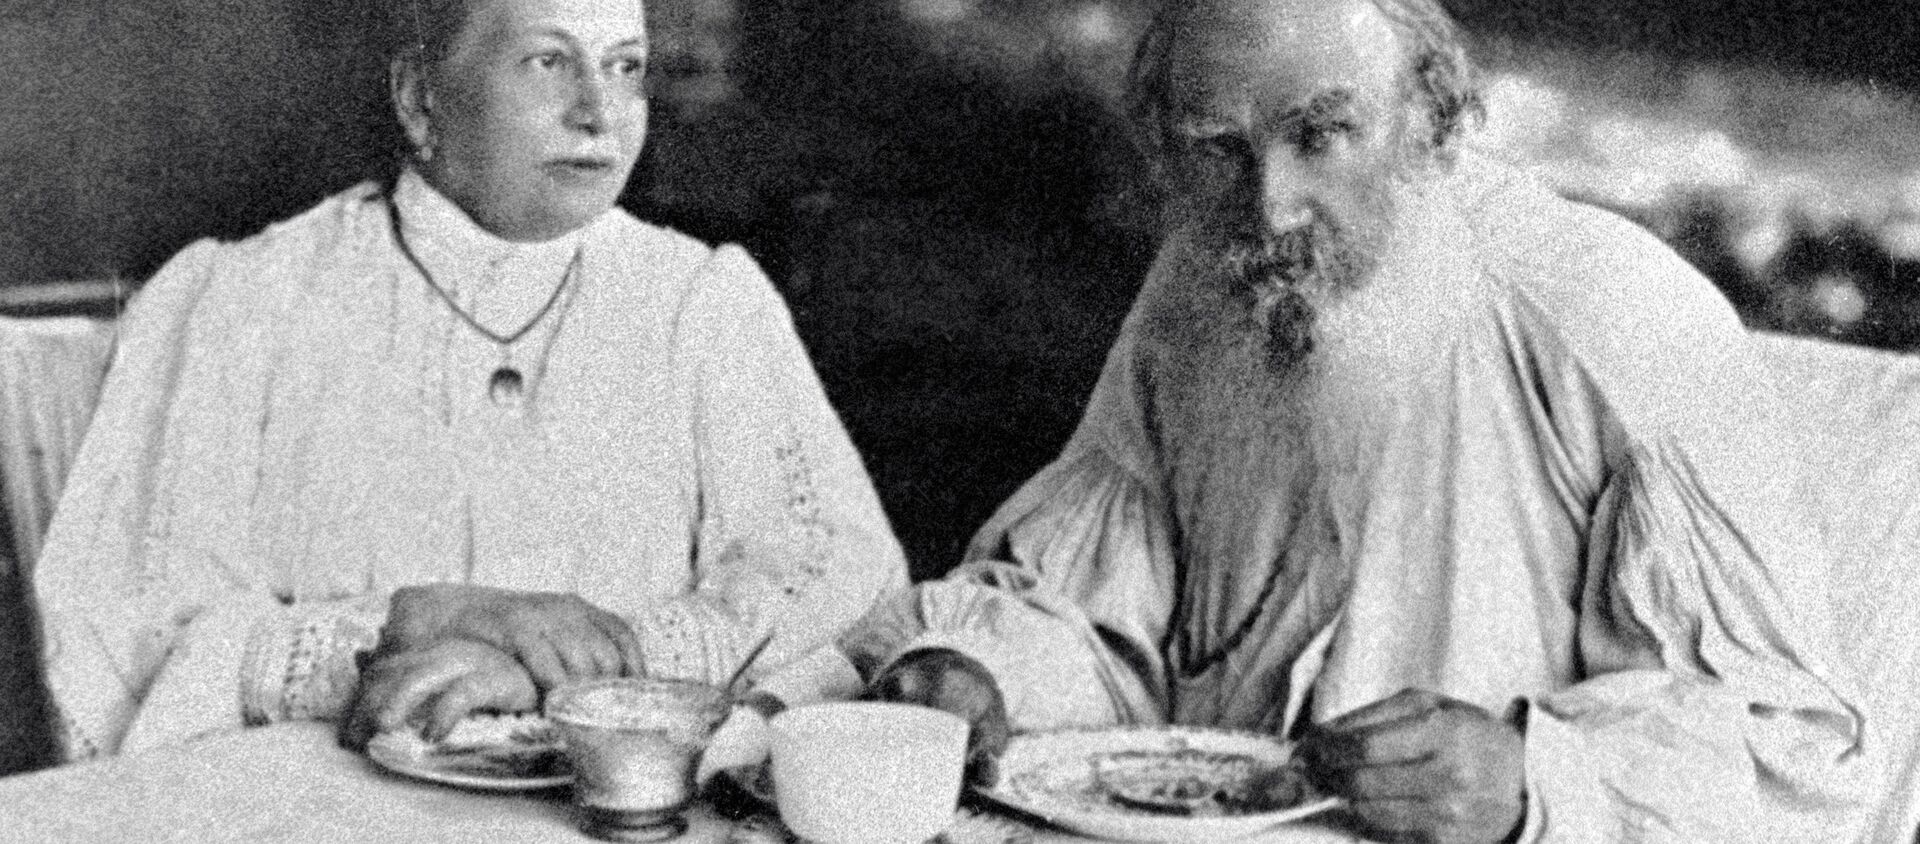 León Tolstói, escritor ruso, con su esposa Sofía - Sputnik Mundo, 1920, 20.11.2020